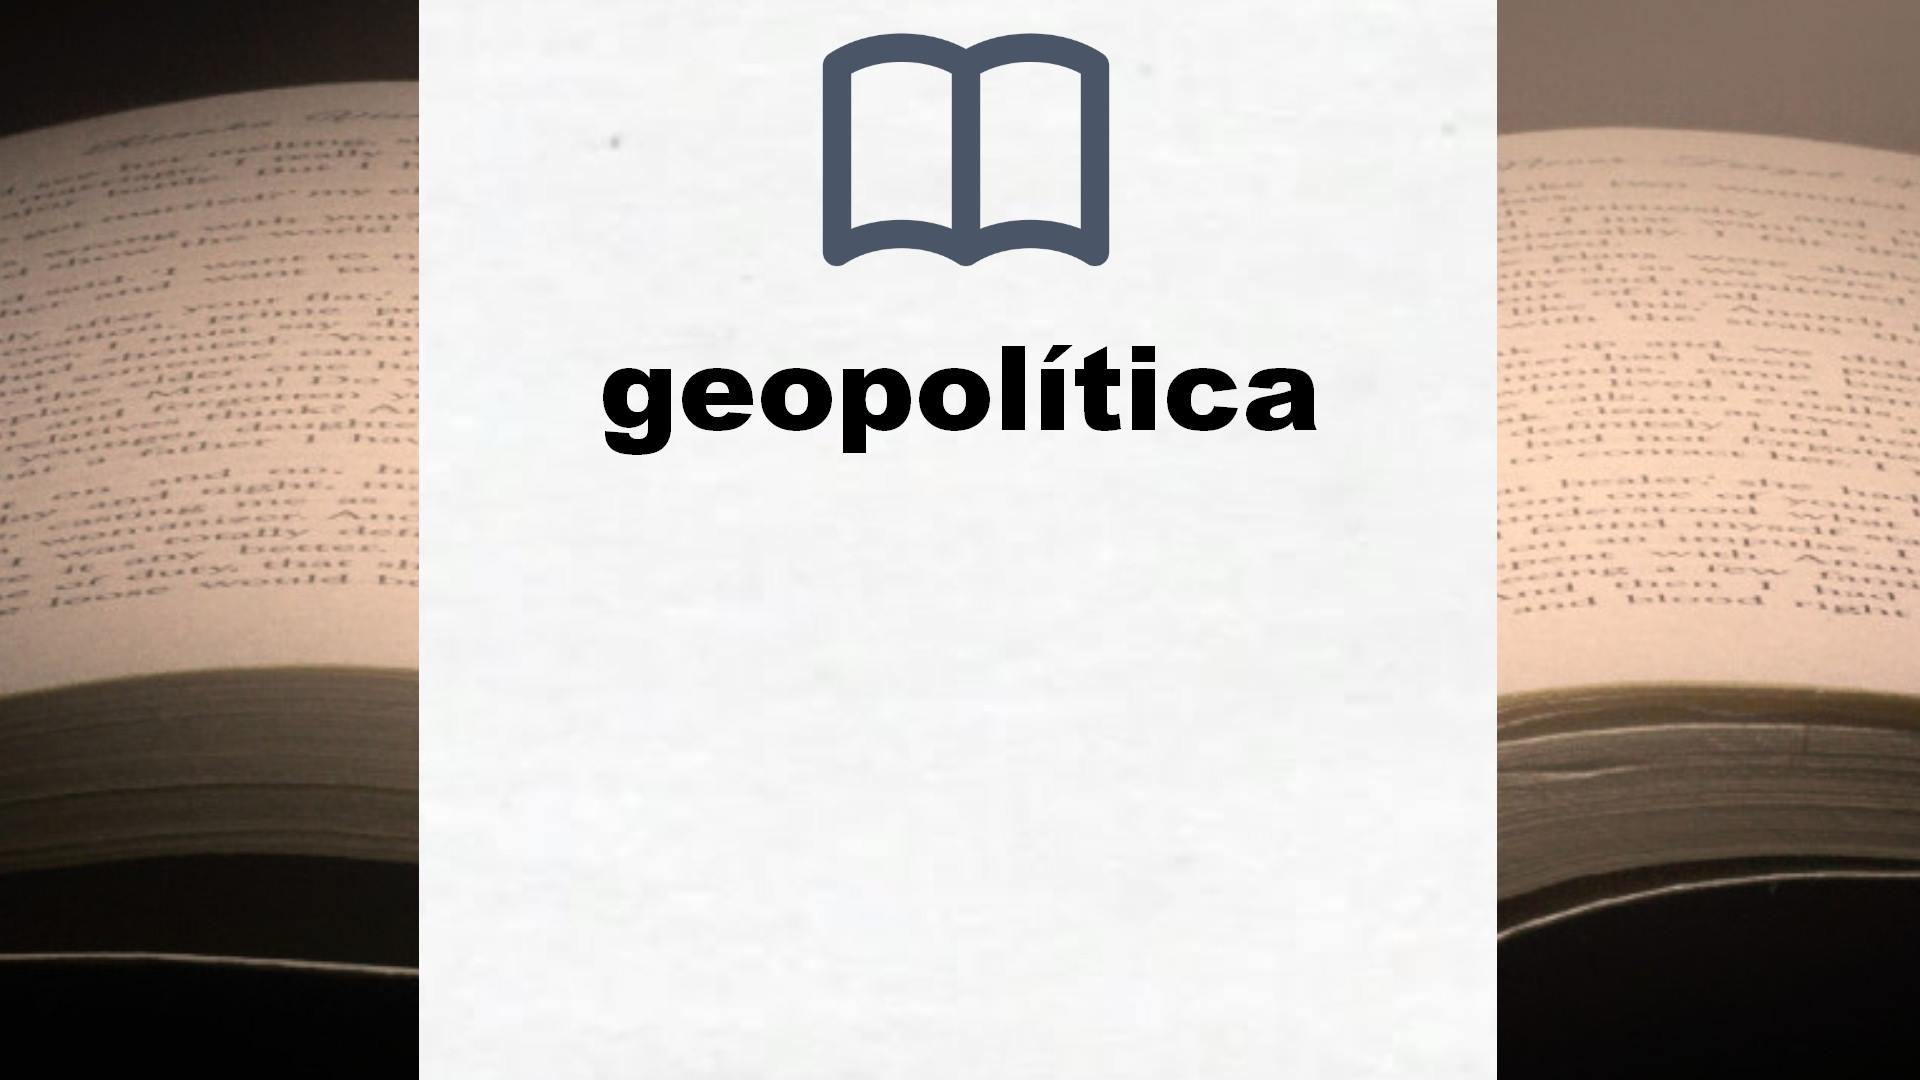 Libros sobre geopolítica